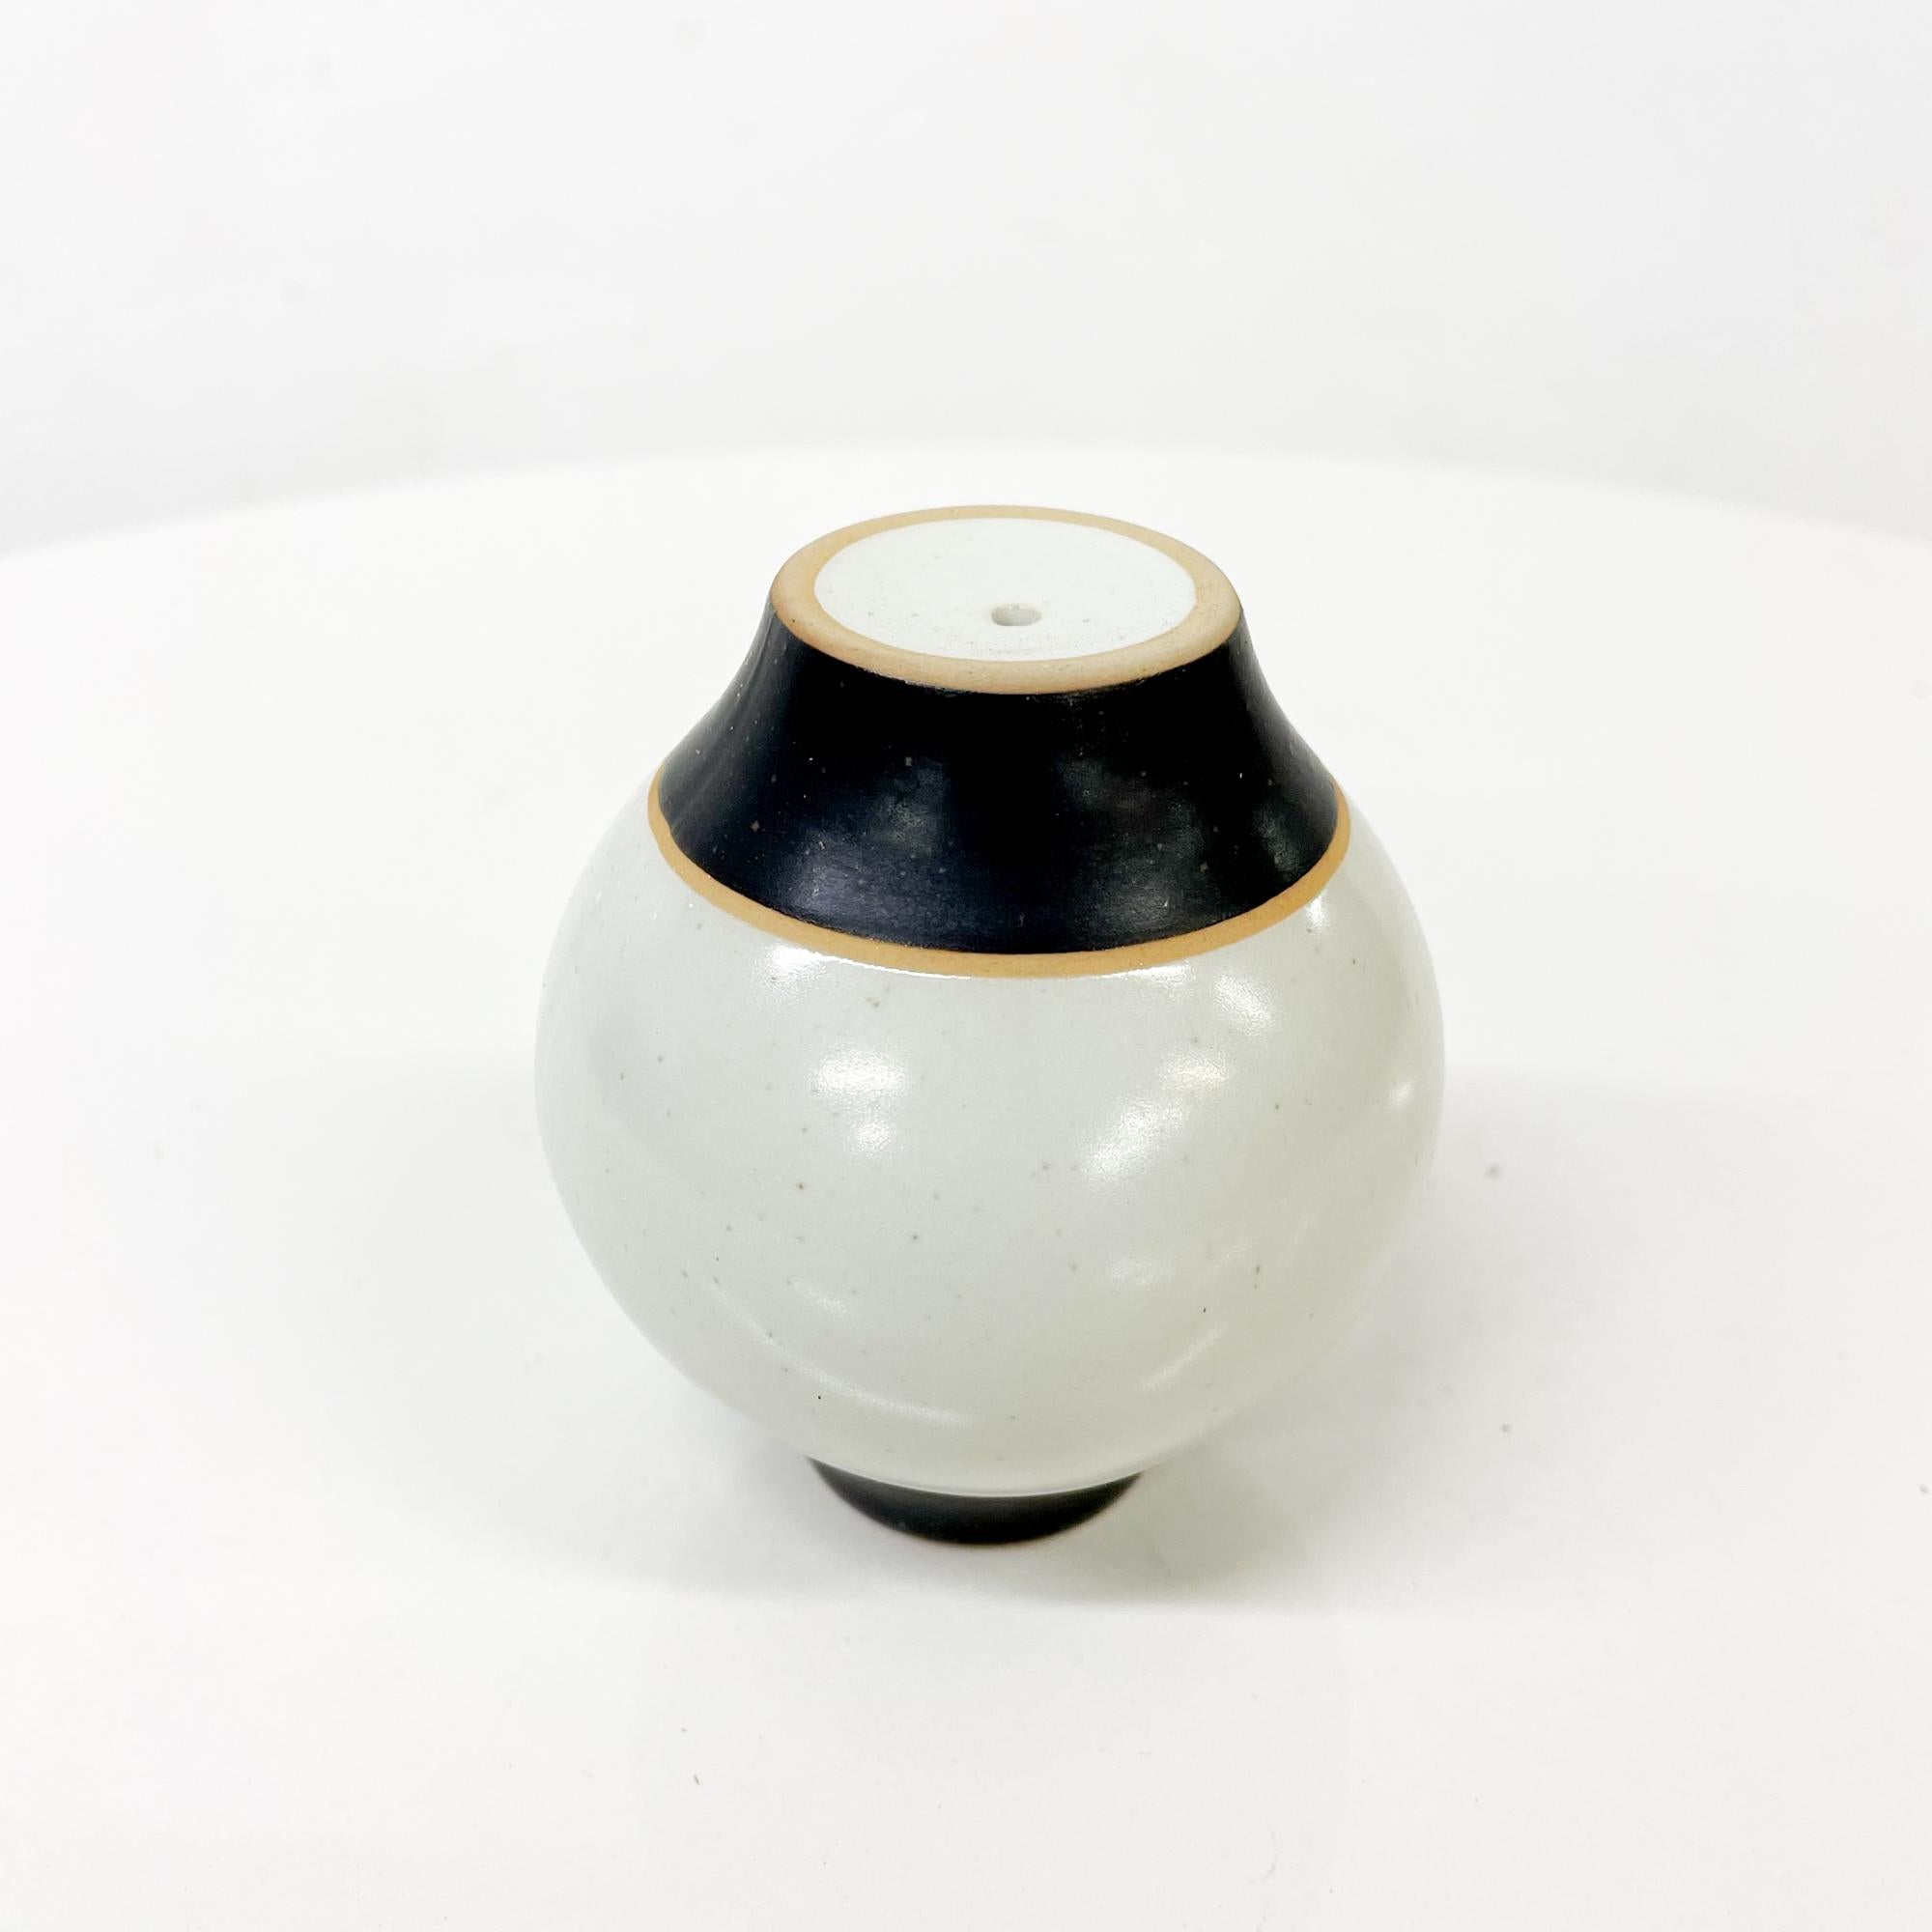 1980s Modernist Pottery Salt or Pepper Shaker Post Modern Design Black Gray 1